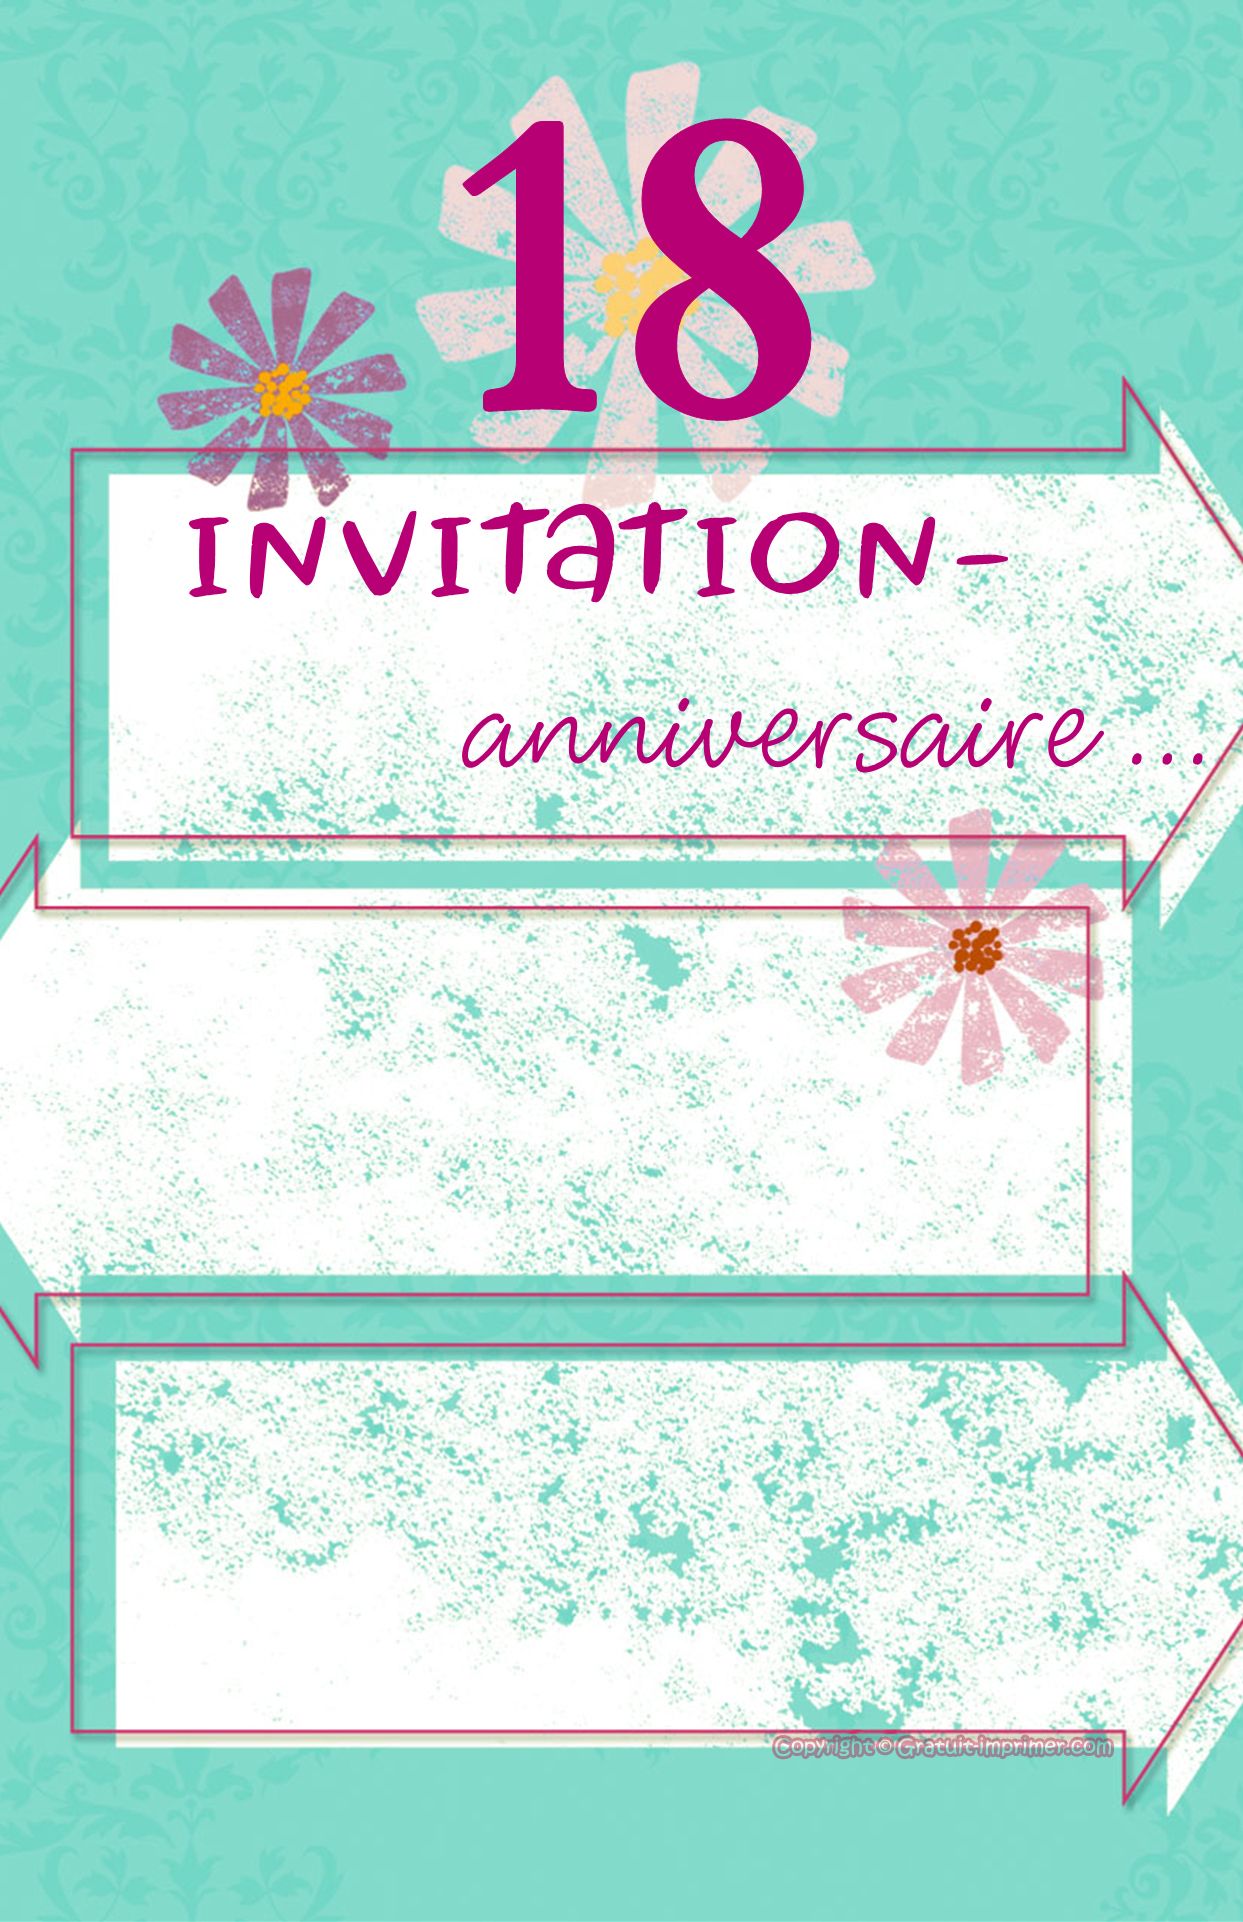 Carte invitation anniversaire 35 ans gratuite à imprimer